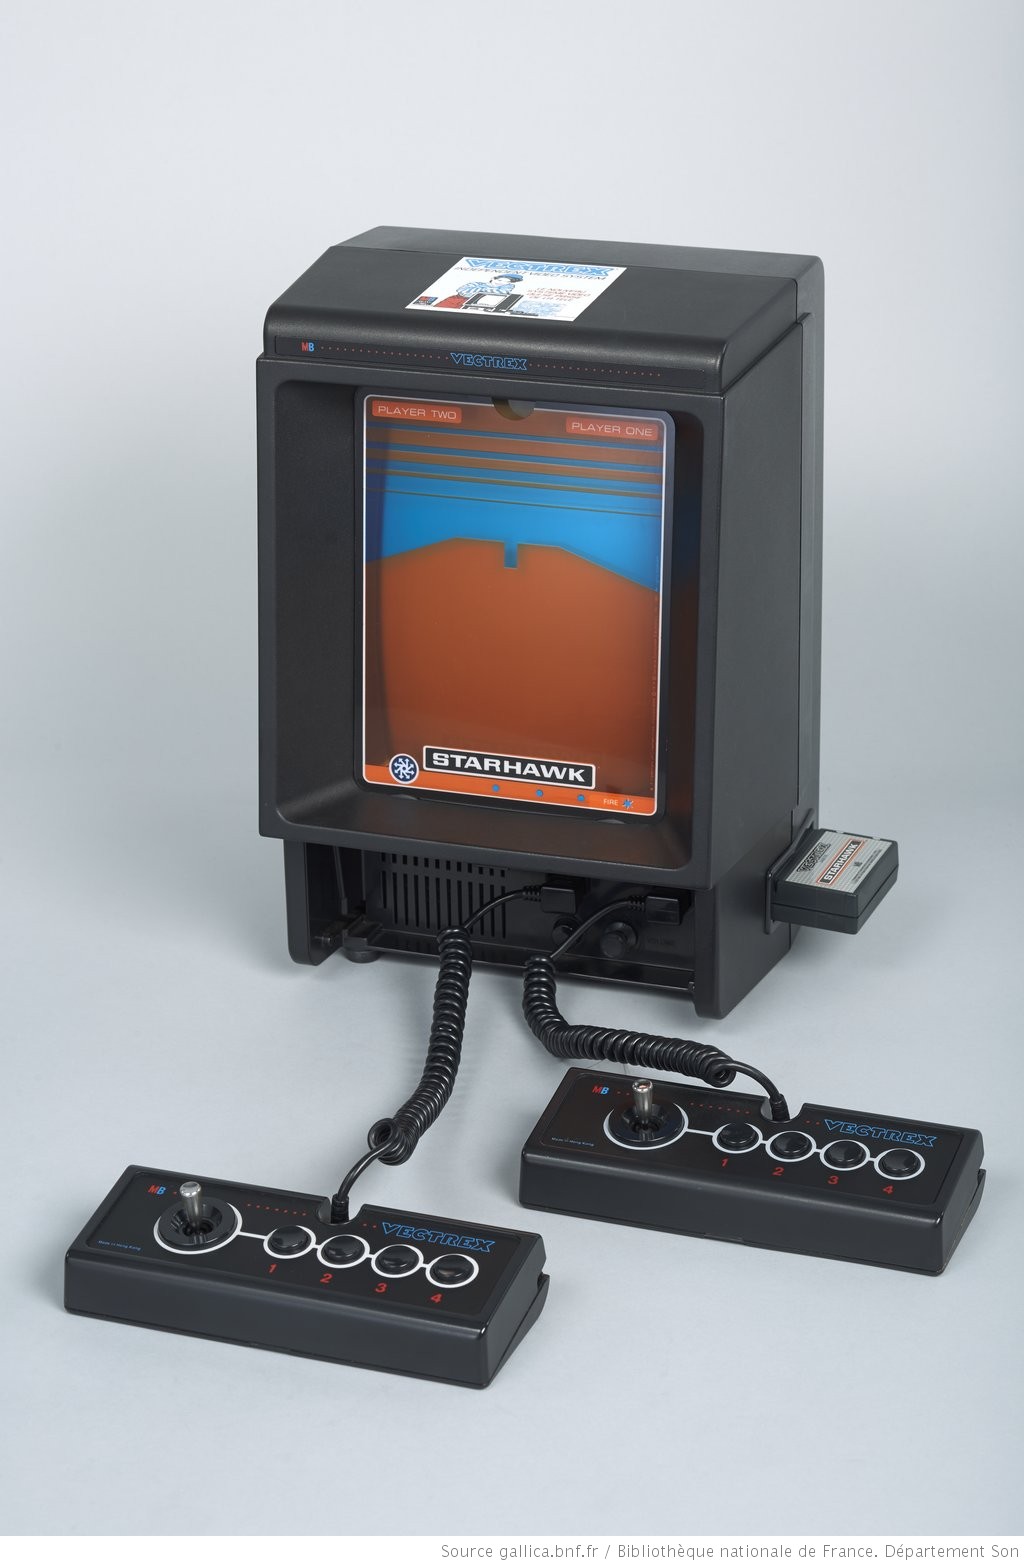 Collection Charles Cros. Consoles de jeux vidéo (média : multimédias). Consoles de jeux vidéo MB Video Electronics - Vectrex. Console de jeux vidéo MB Video Electronics Vectrex